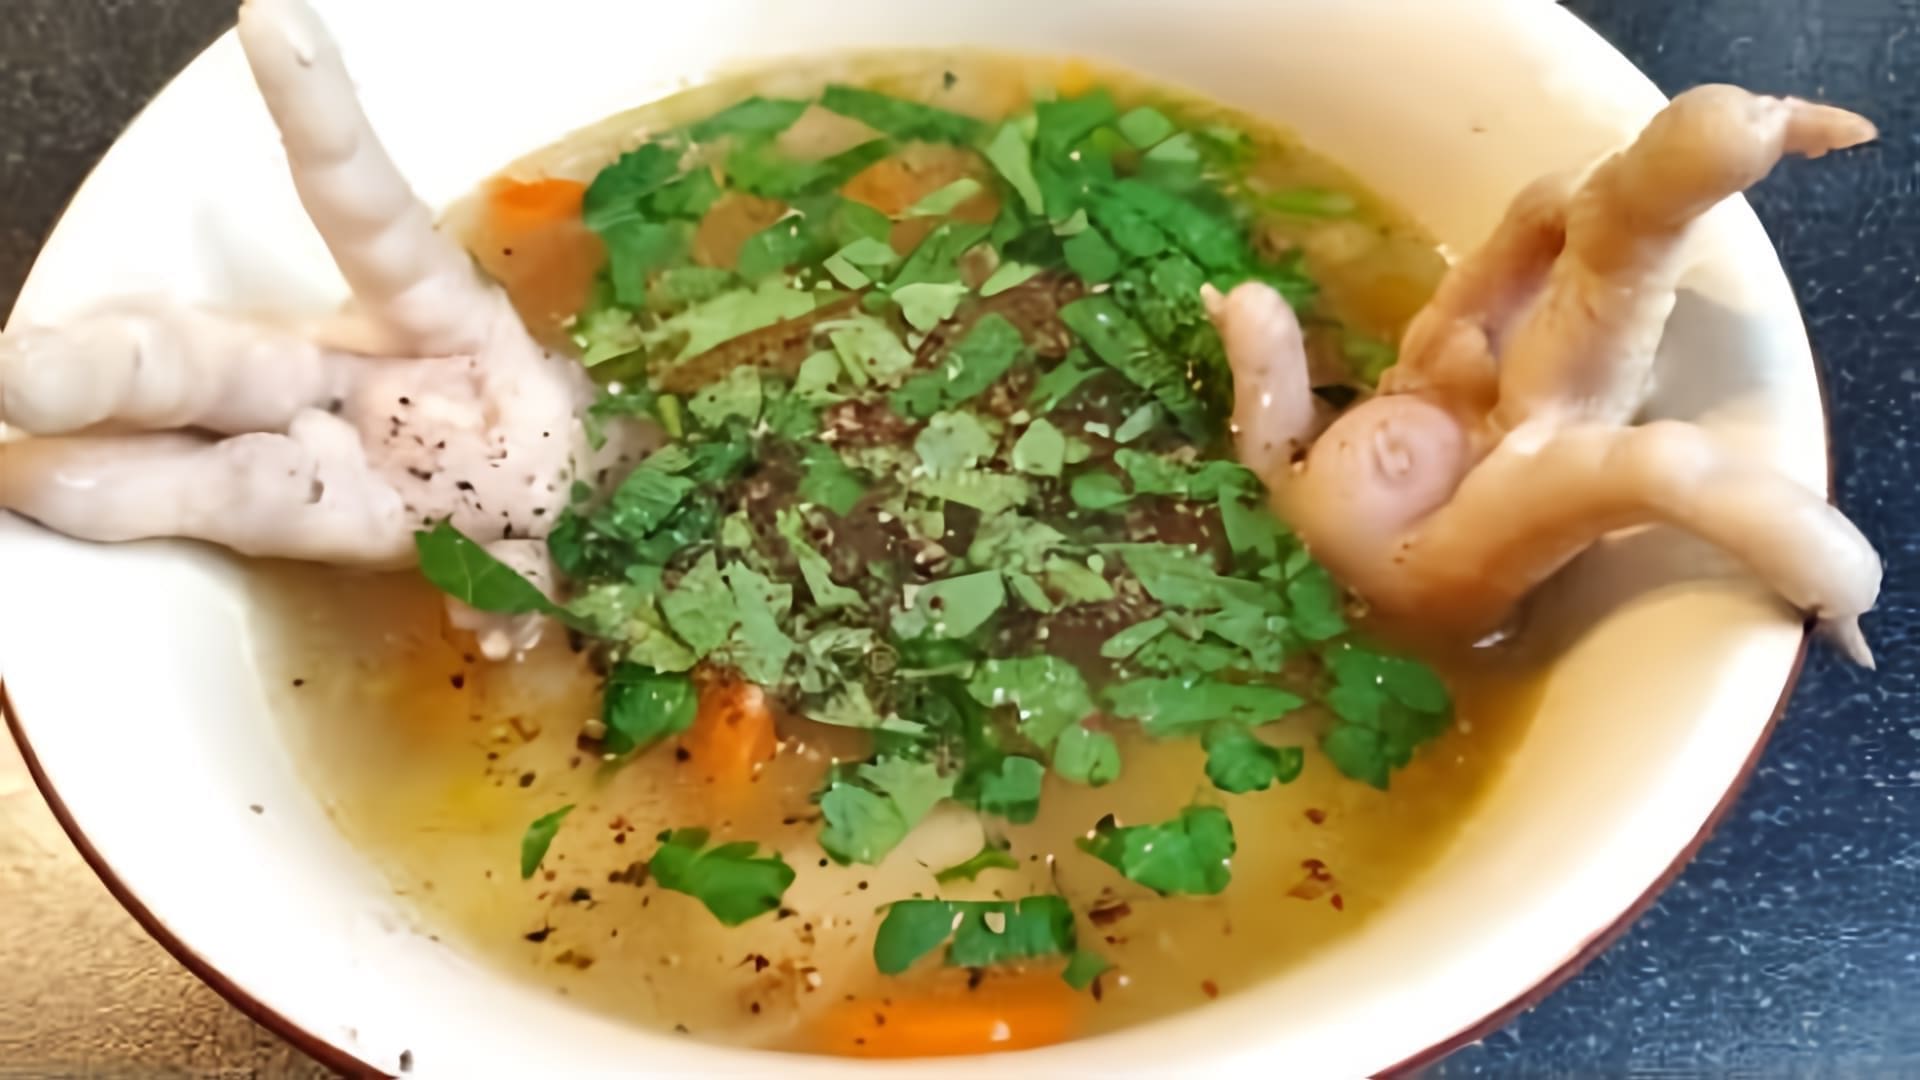 В этом видео демонстрируется процесс приготовления супа из куриных лапок